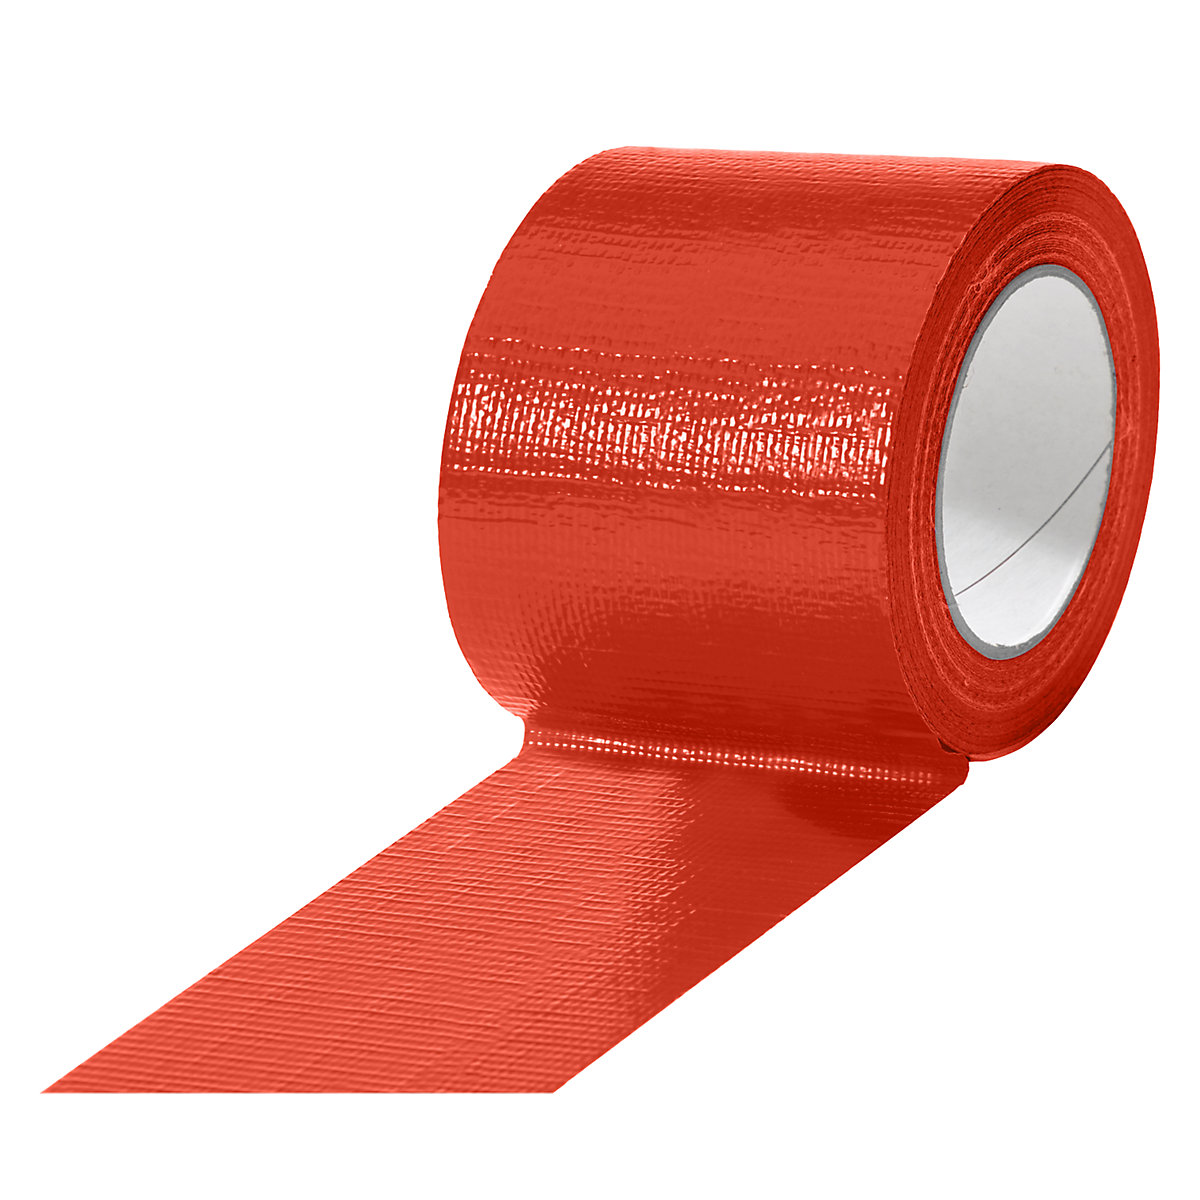 Textilná páska, v rôznych farbách, OJ 12 kotúčov, červená, šírka pásky 75 mm-13